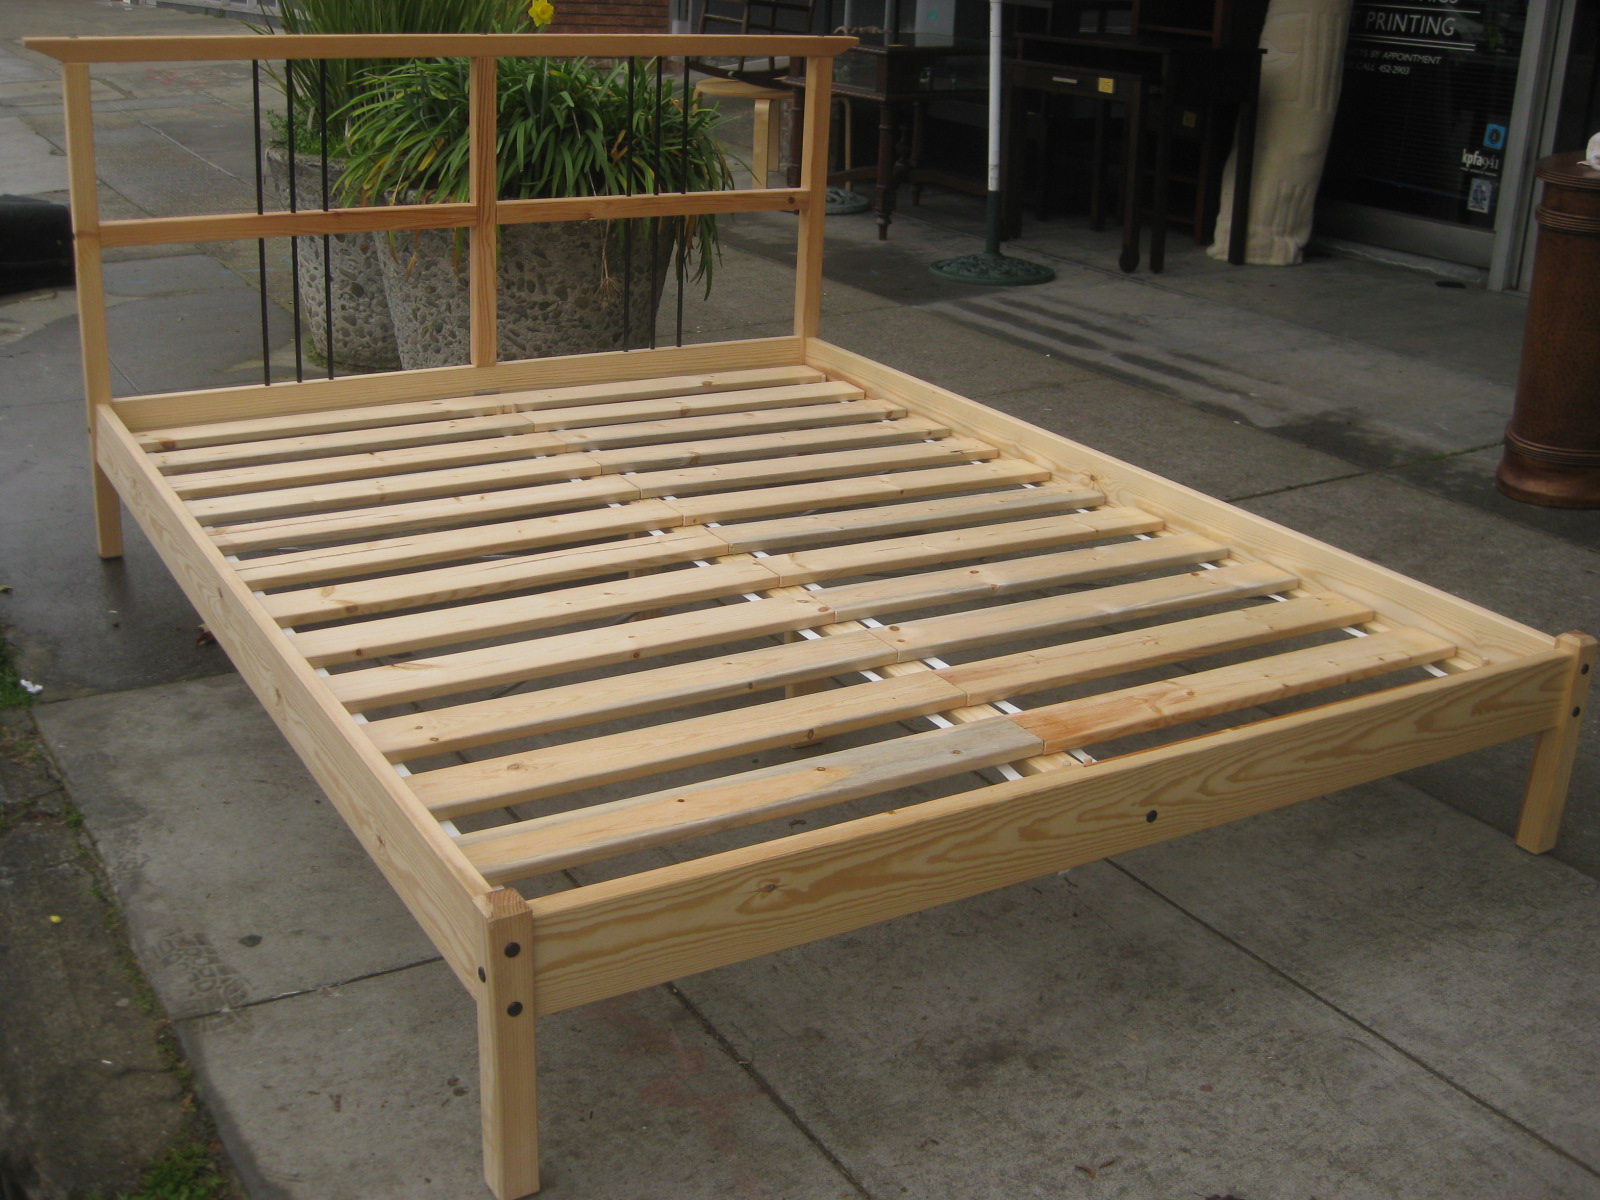 Platform Bed Frames